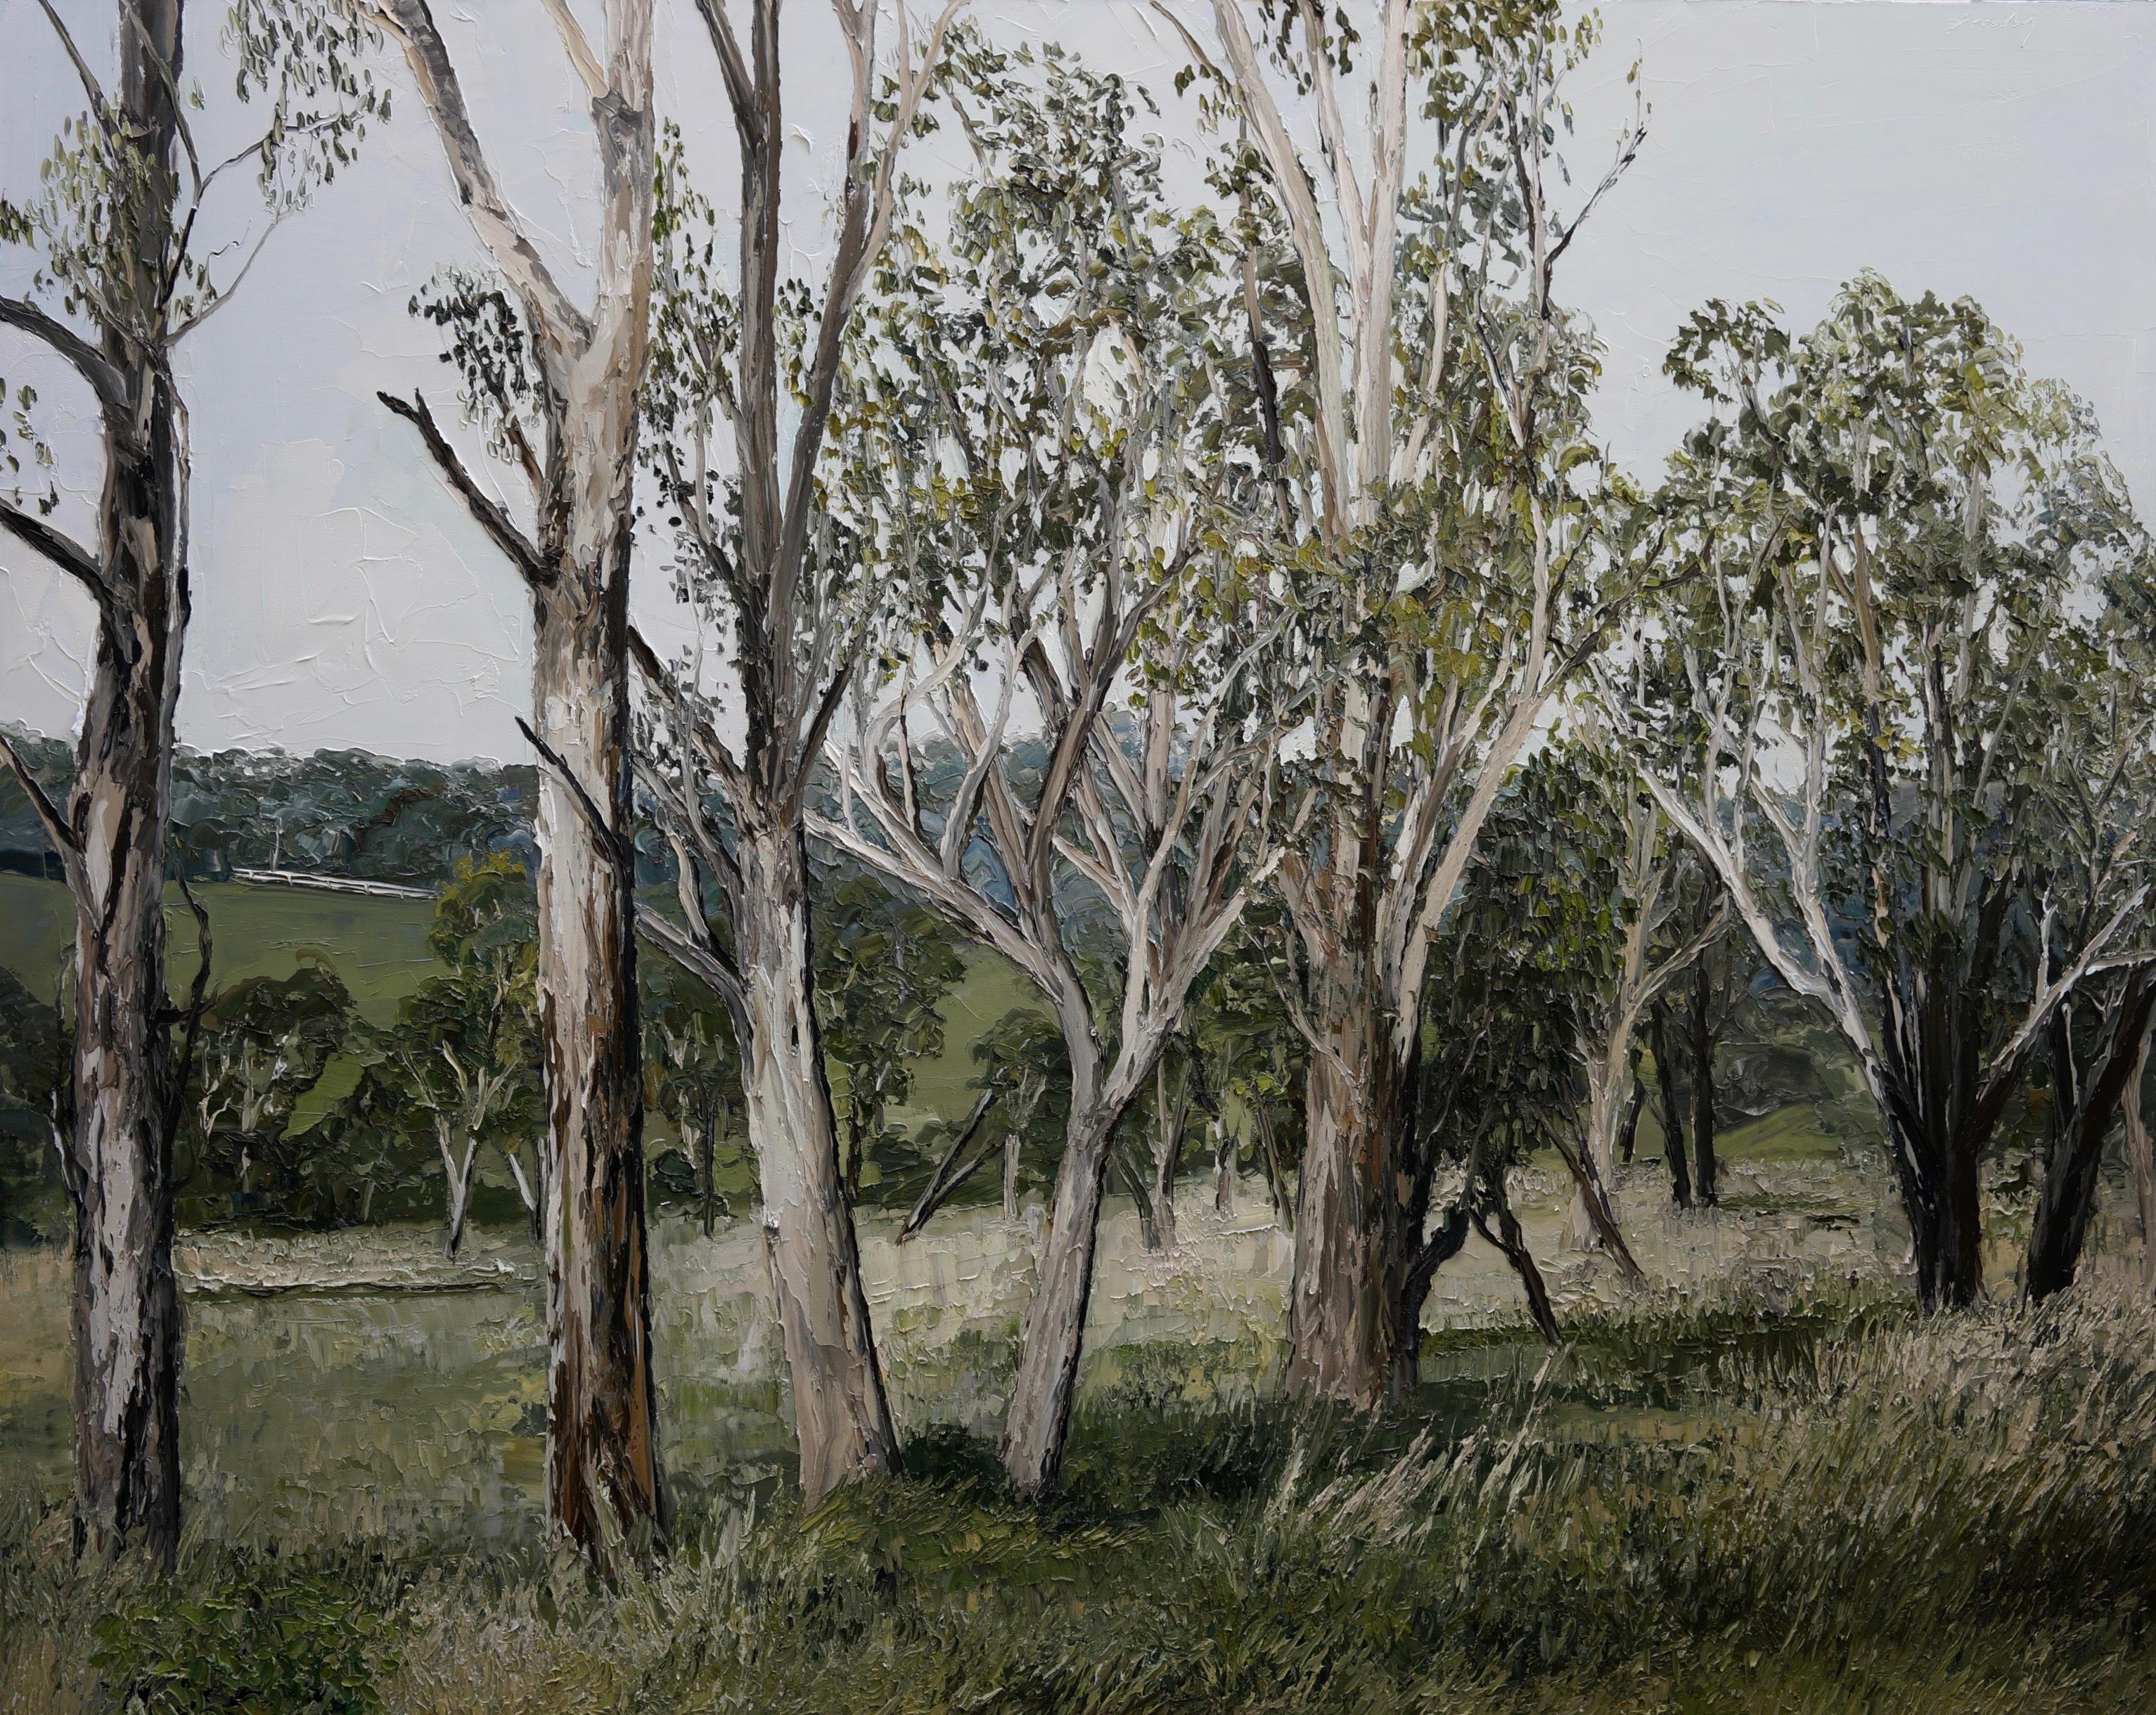 Abstract Painting di Emily Persson - "Tree Line Sublime" pittura ad olio contemporanea ad impasto di un paesaggio forestale scuro 